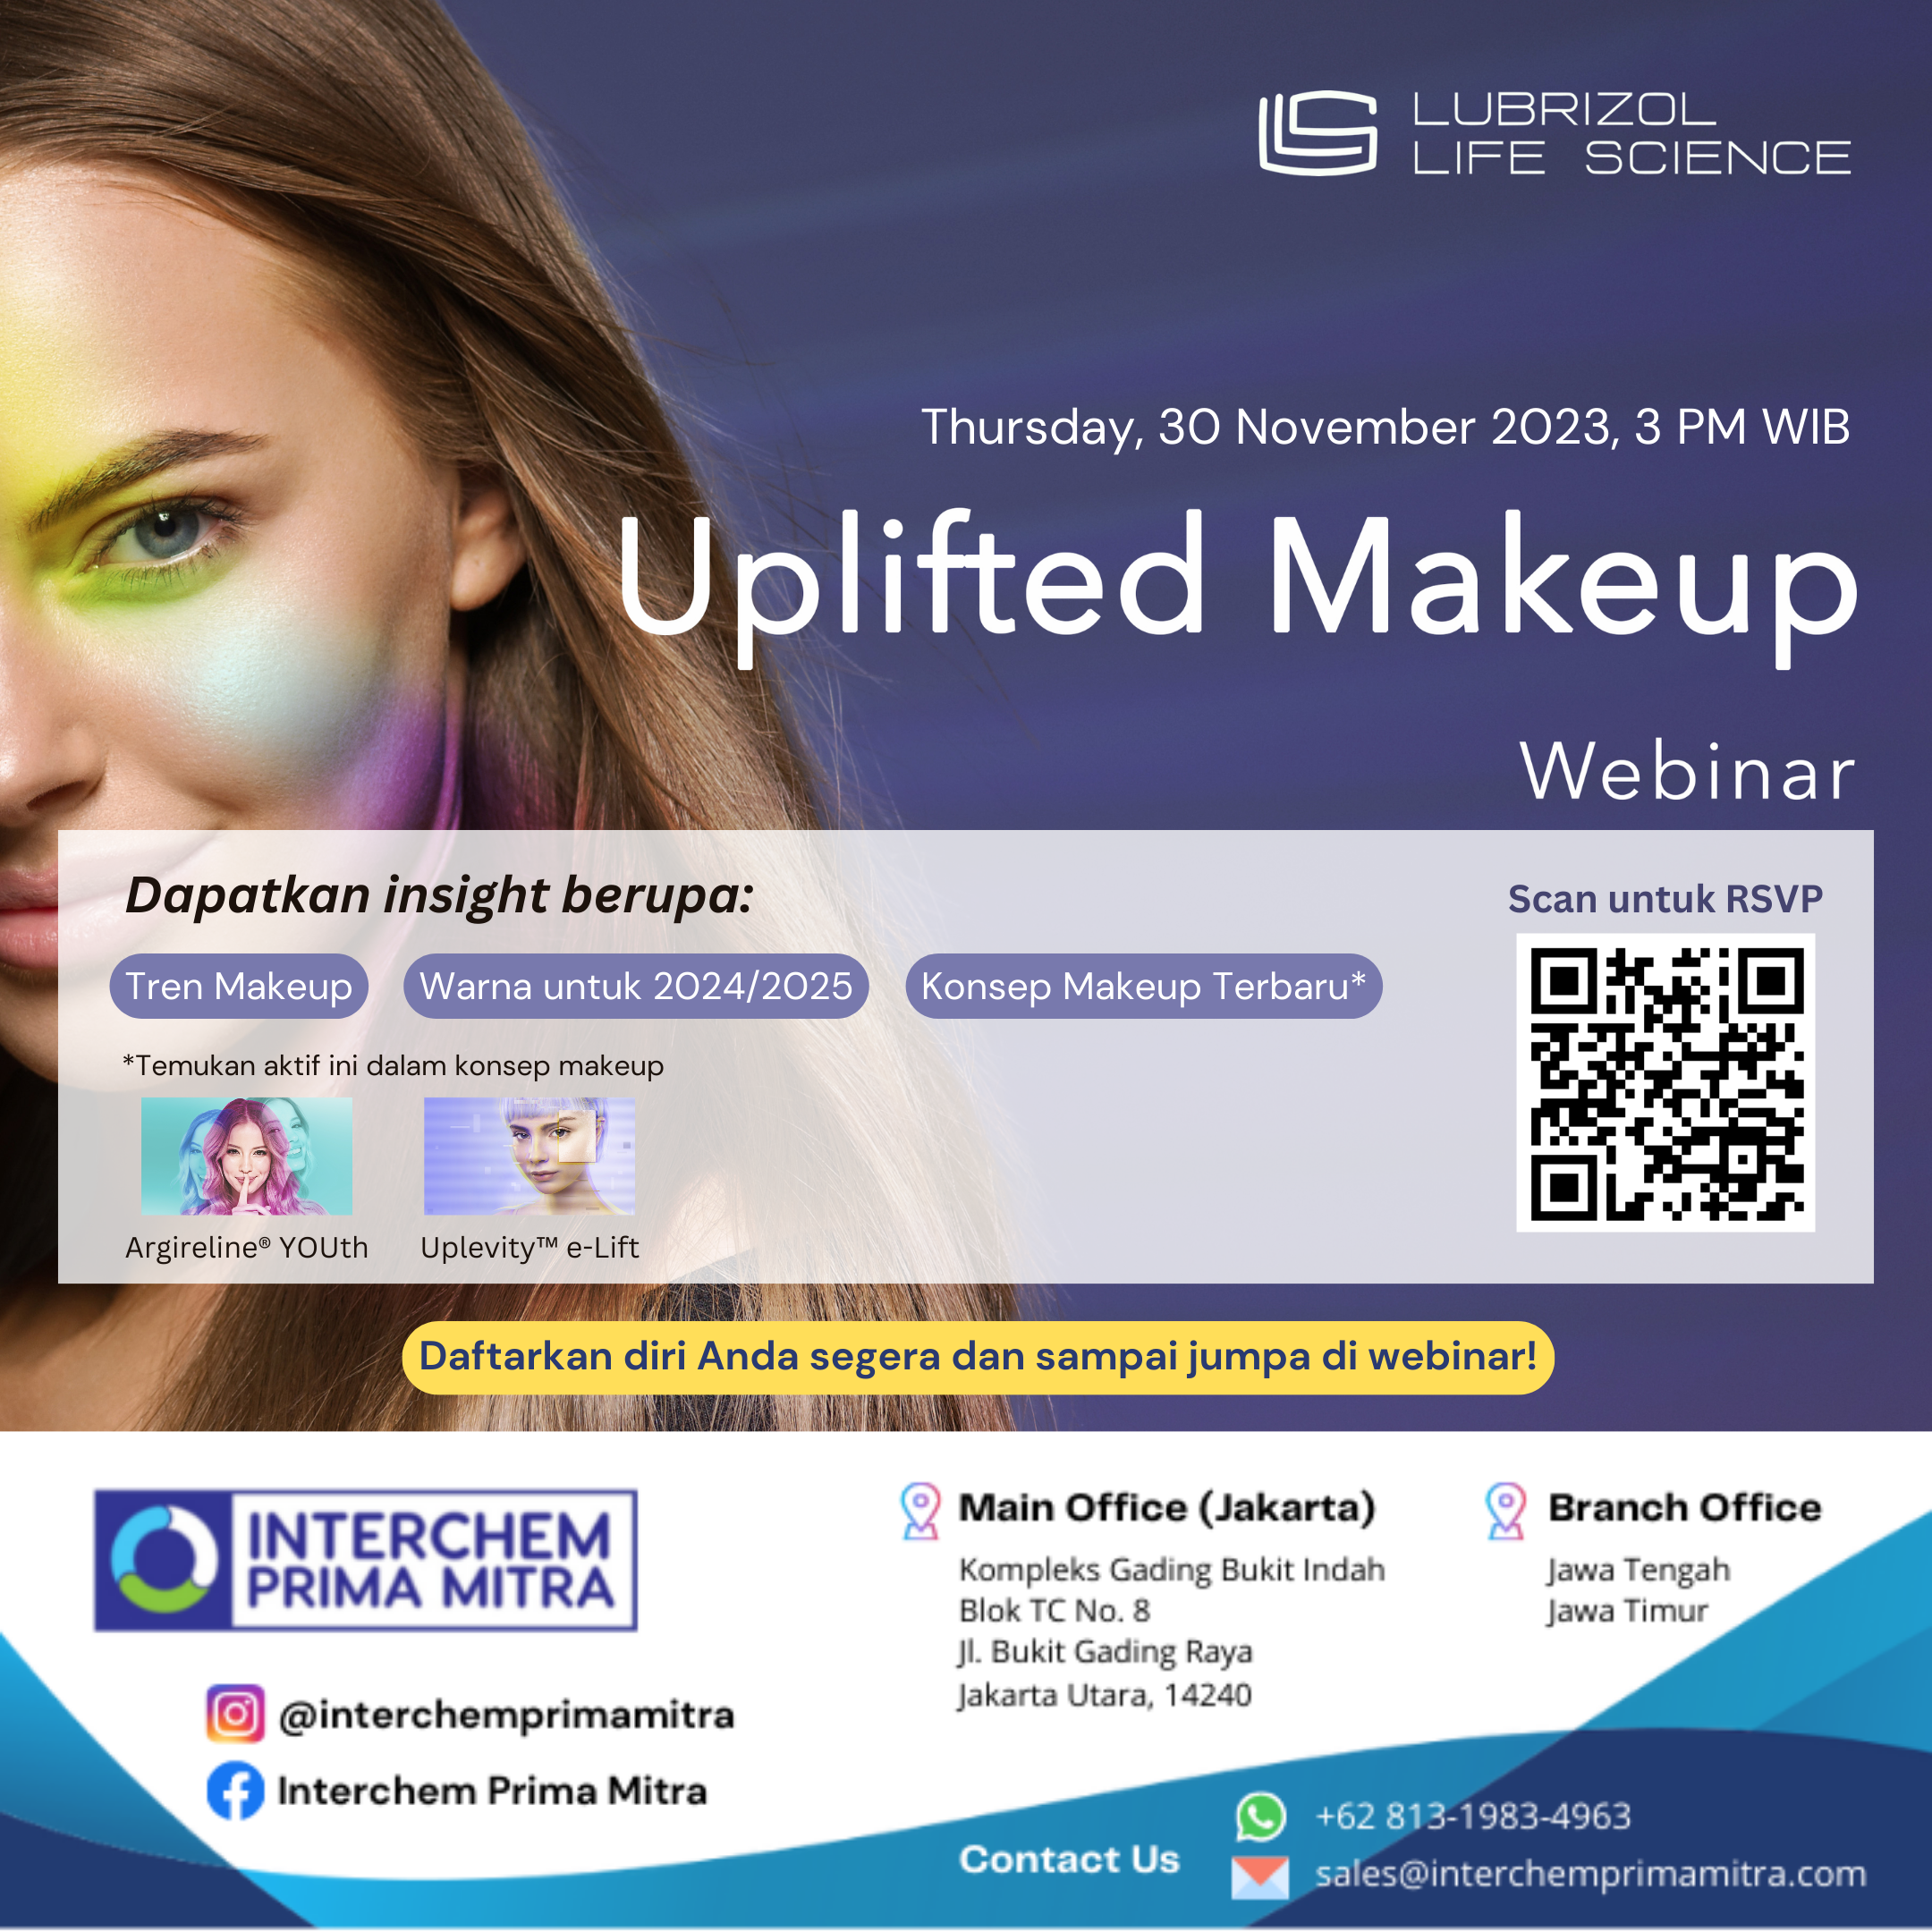 “Uplifted Makeup